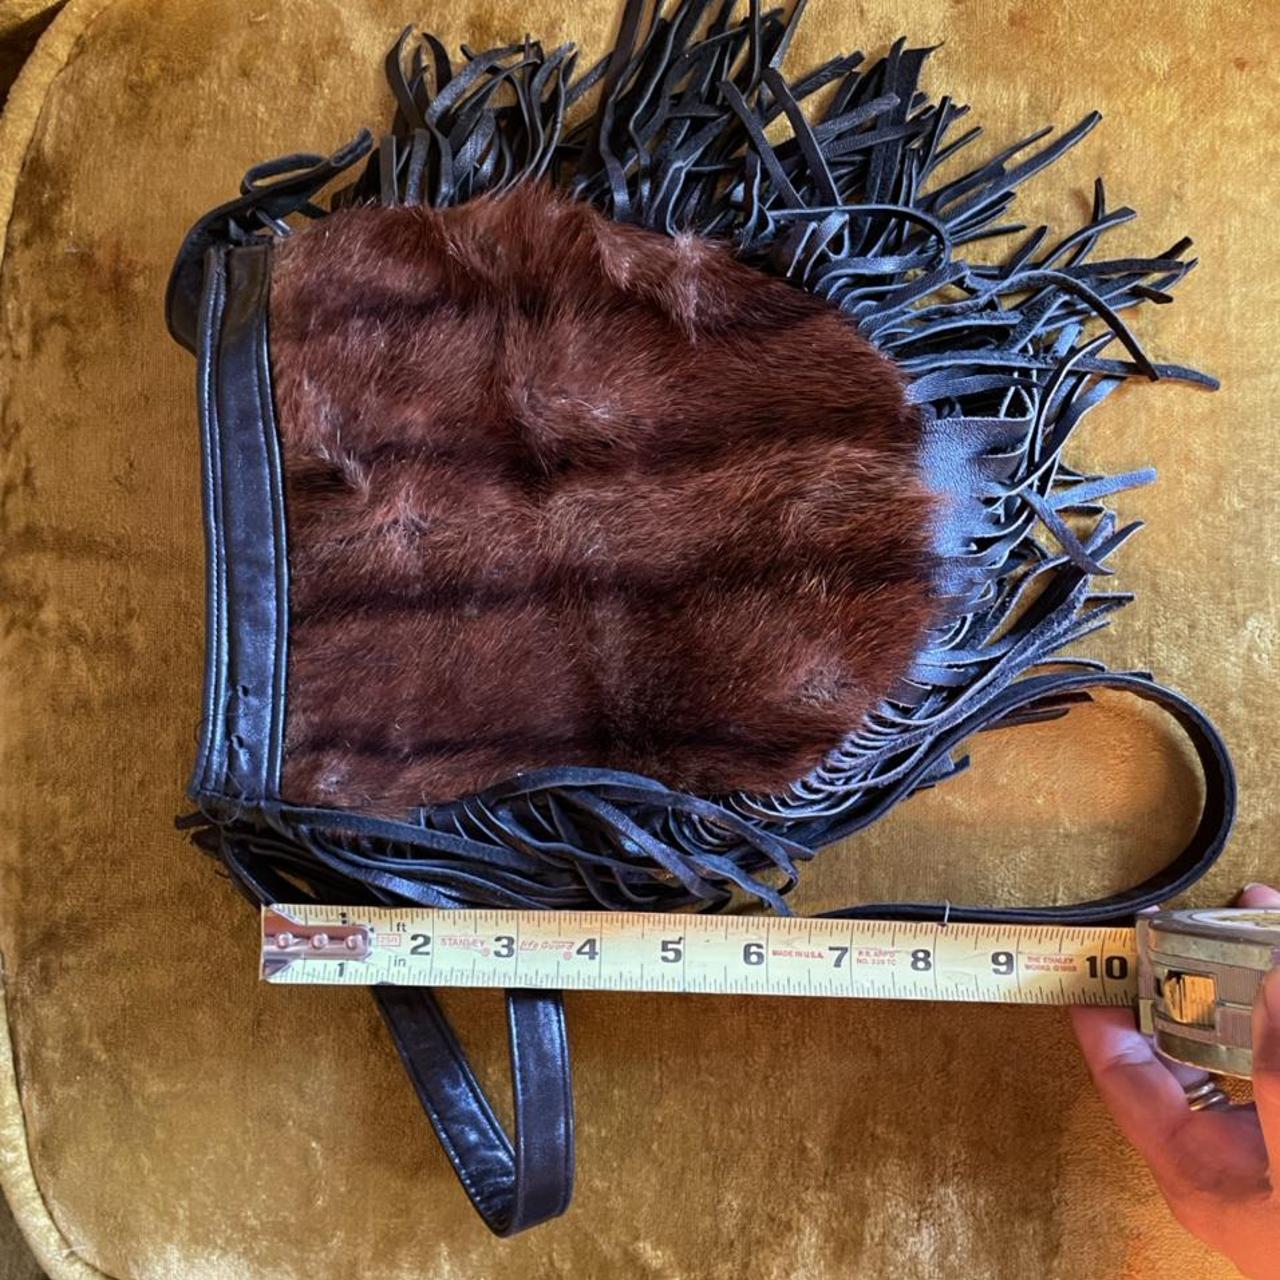 Vintage fur leather fringe purse. Crossbody or - Depop